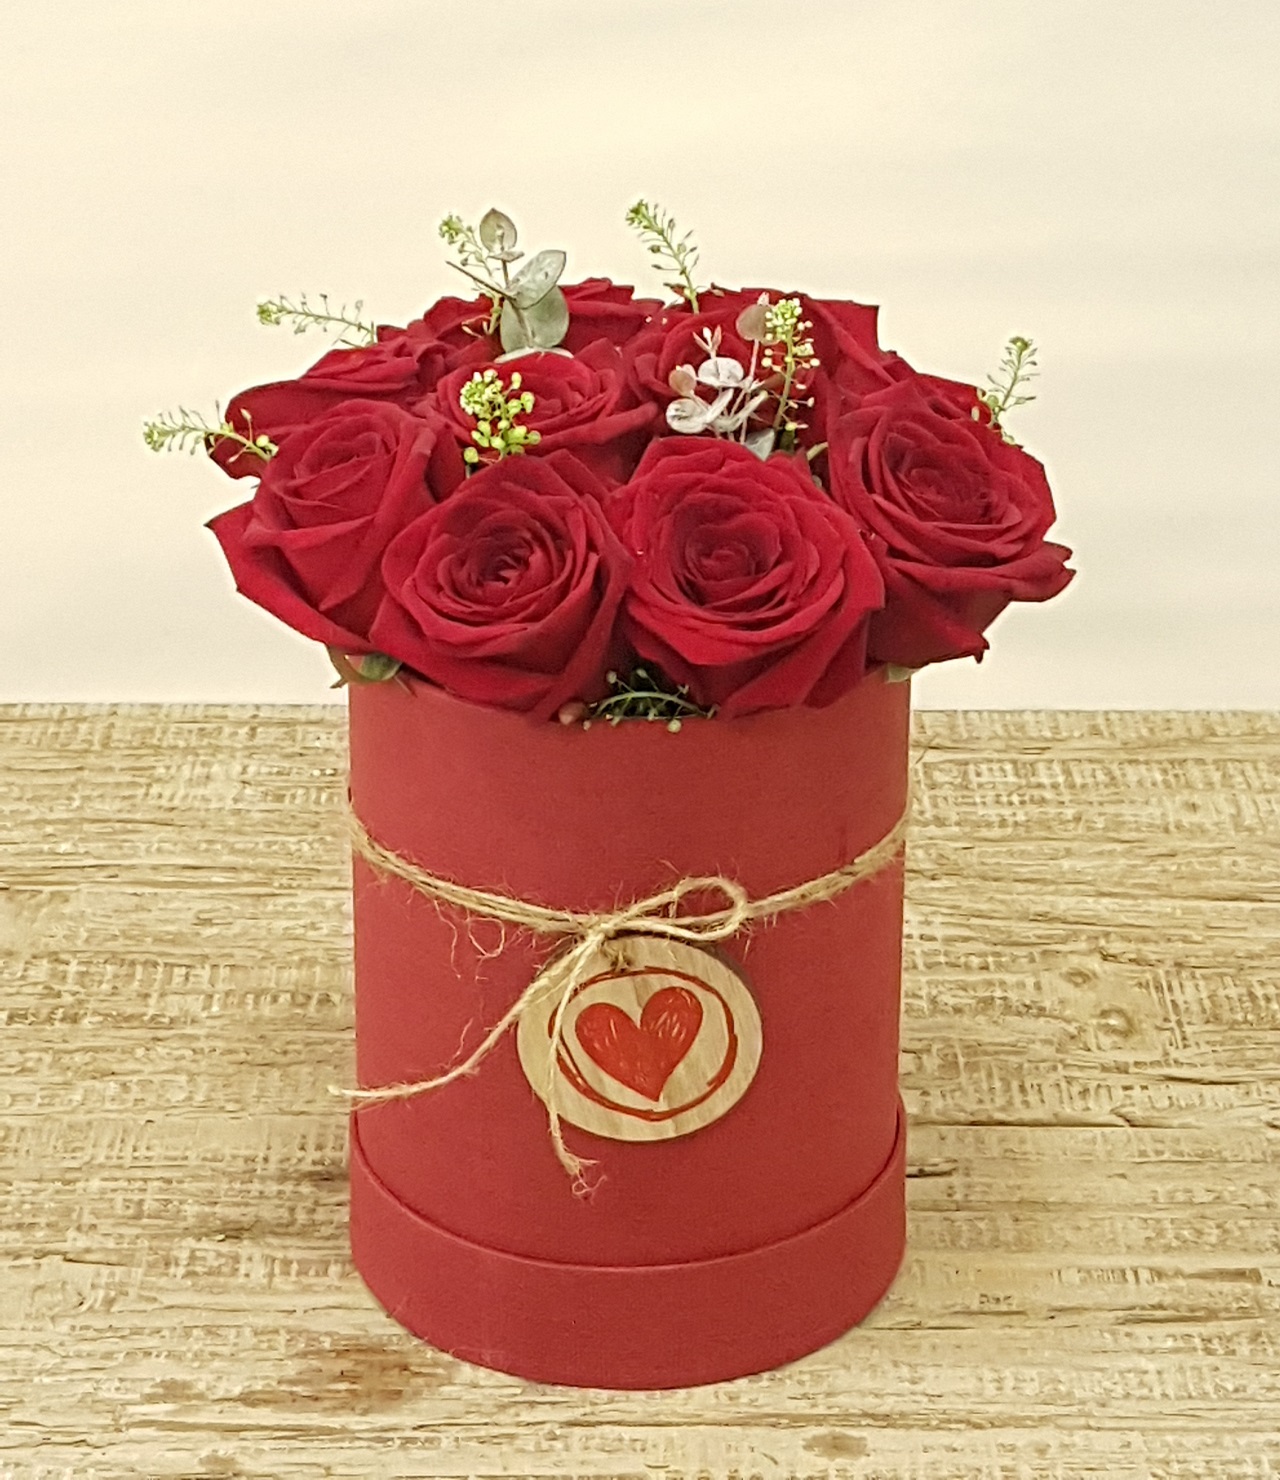 Enviar caja con 10 rosas de San Valentín a domicilio